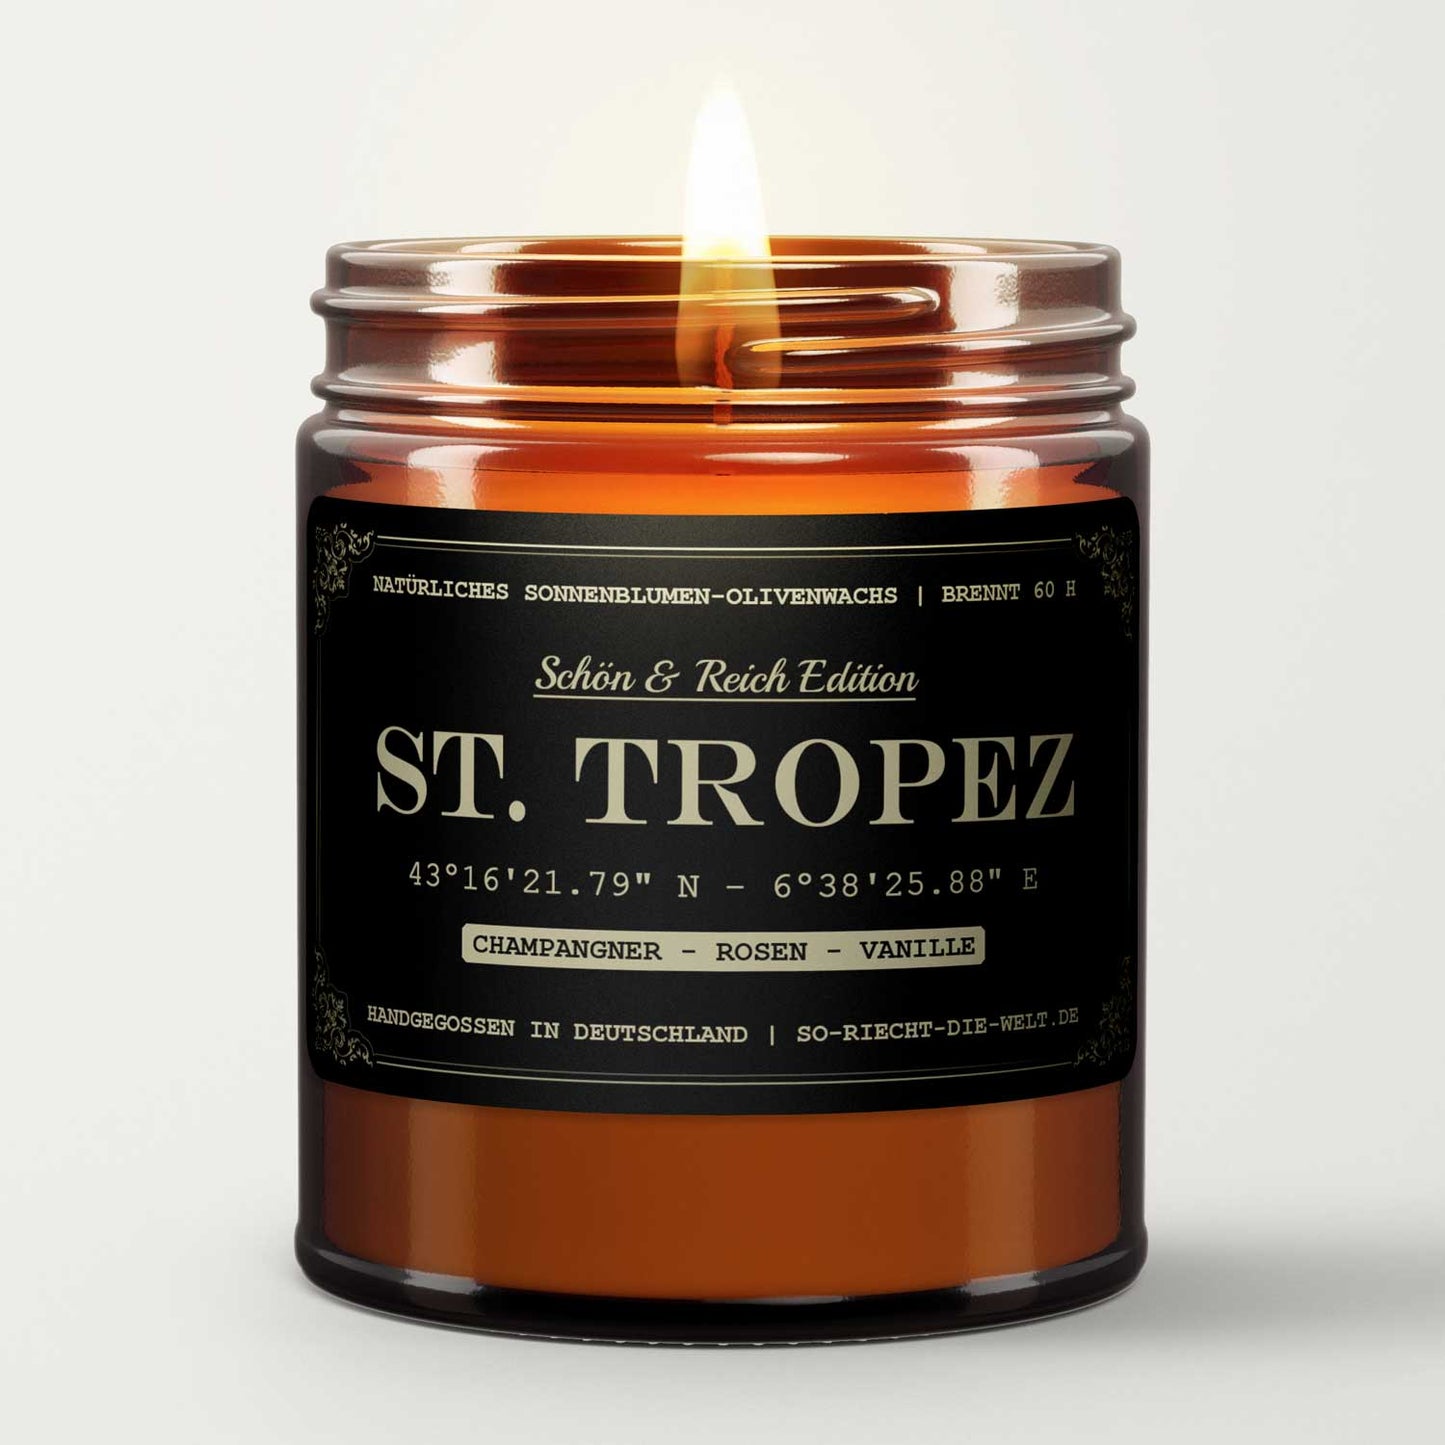 Saint Tropez Kerze - Schön & Reich Edition - Champagner | Rosen | Vanille